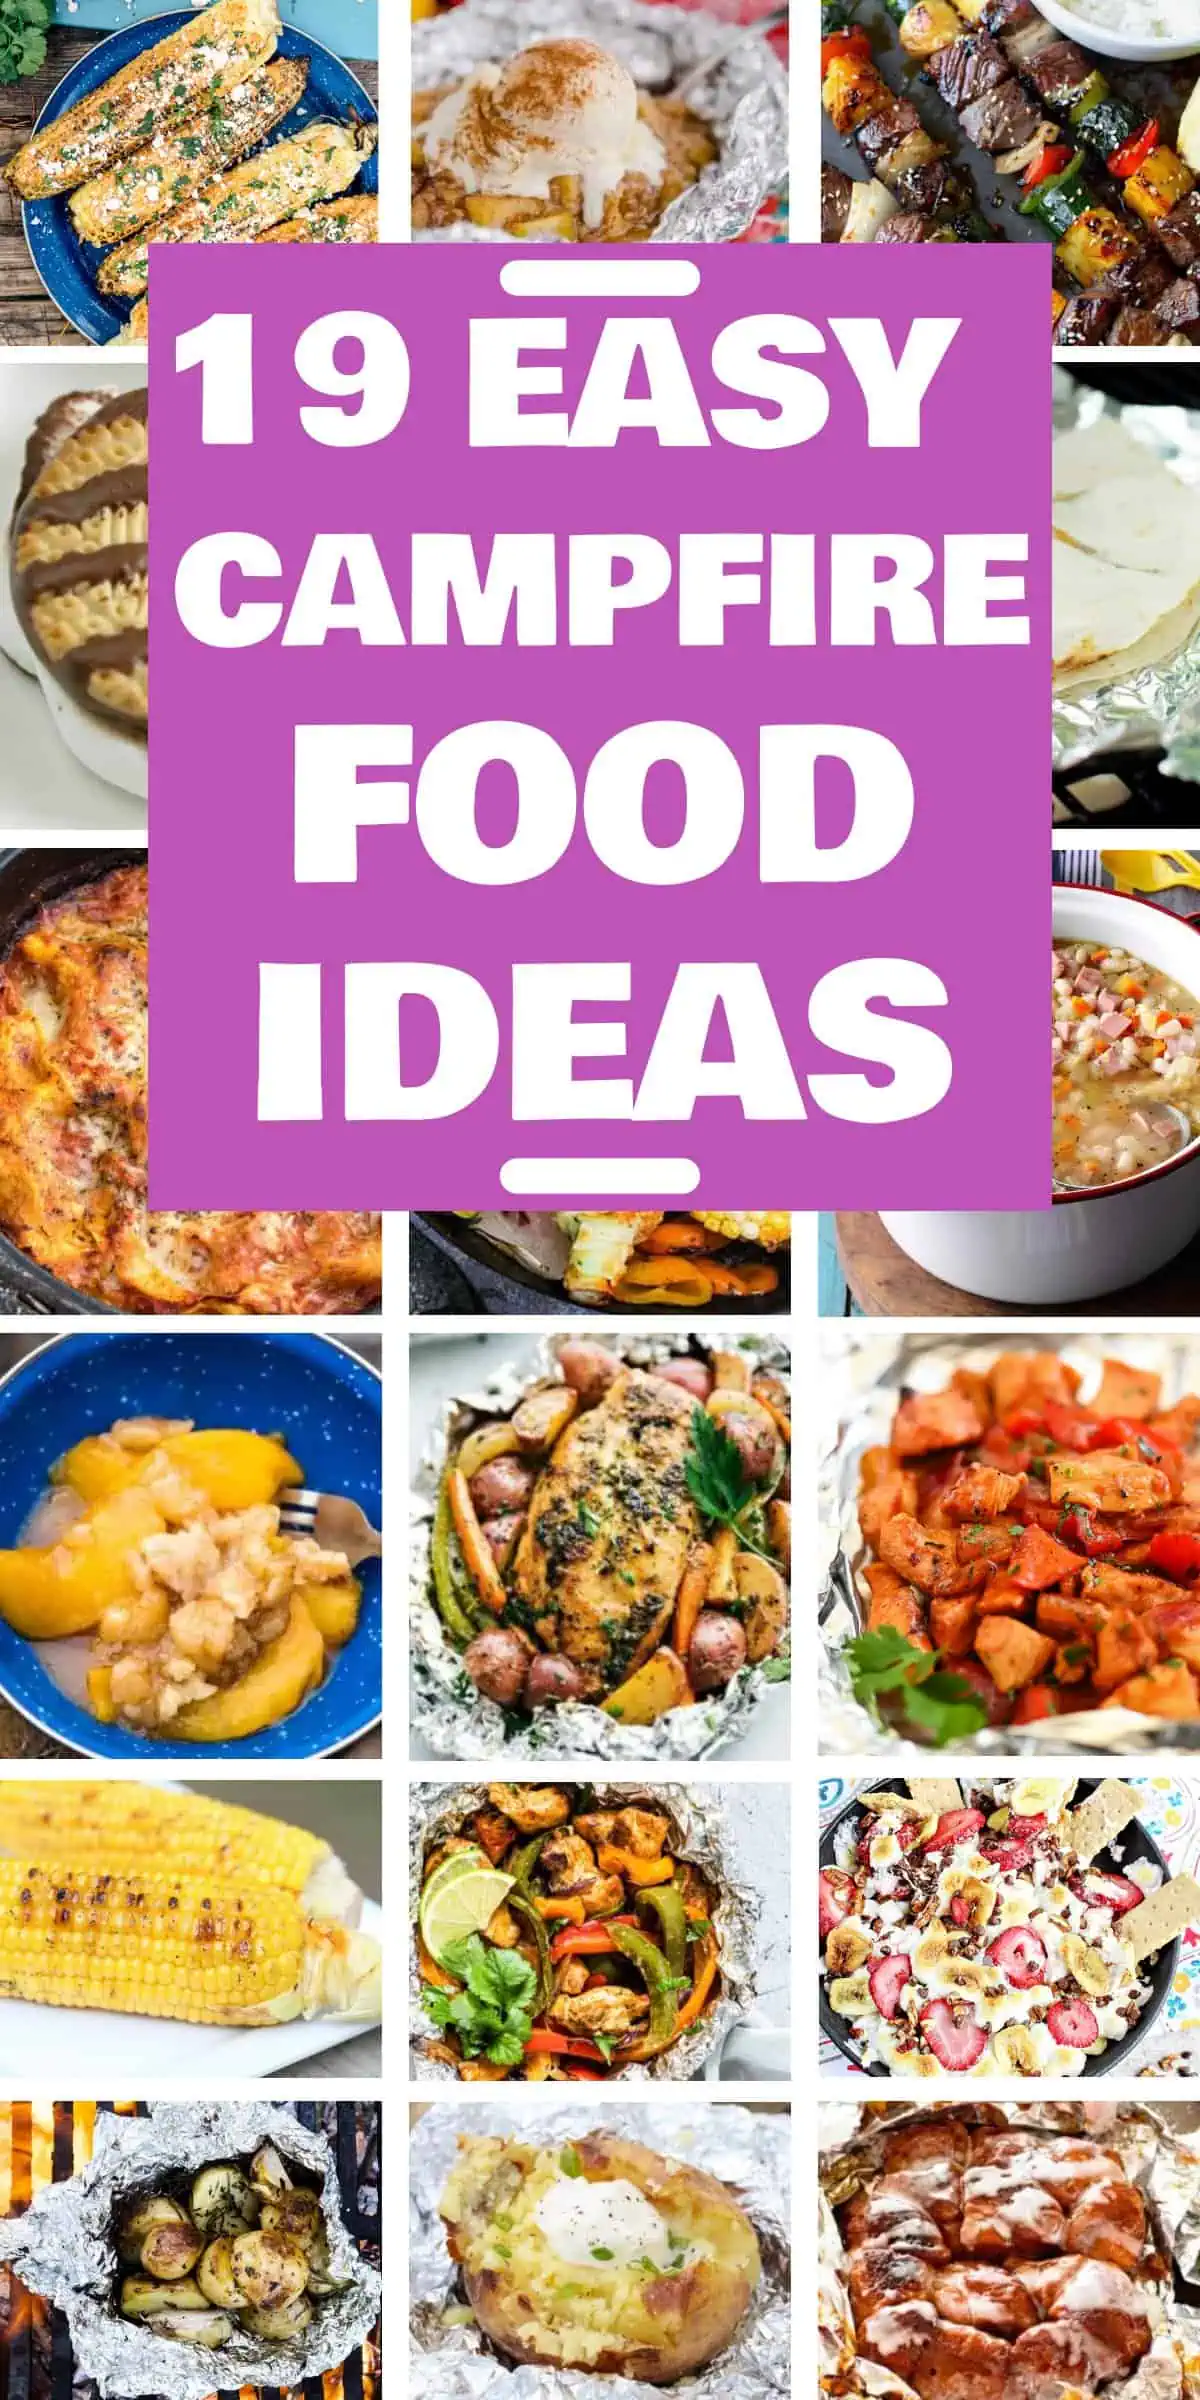 19 Easy Campfire Food Ideas